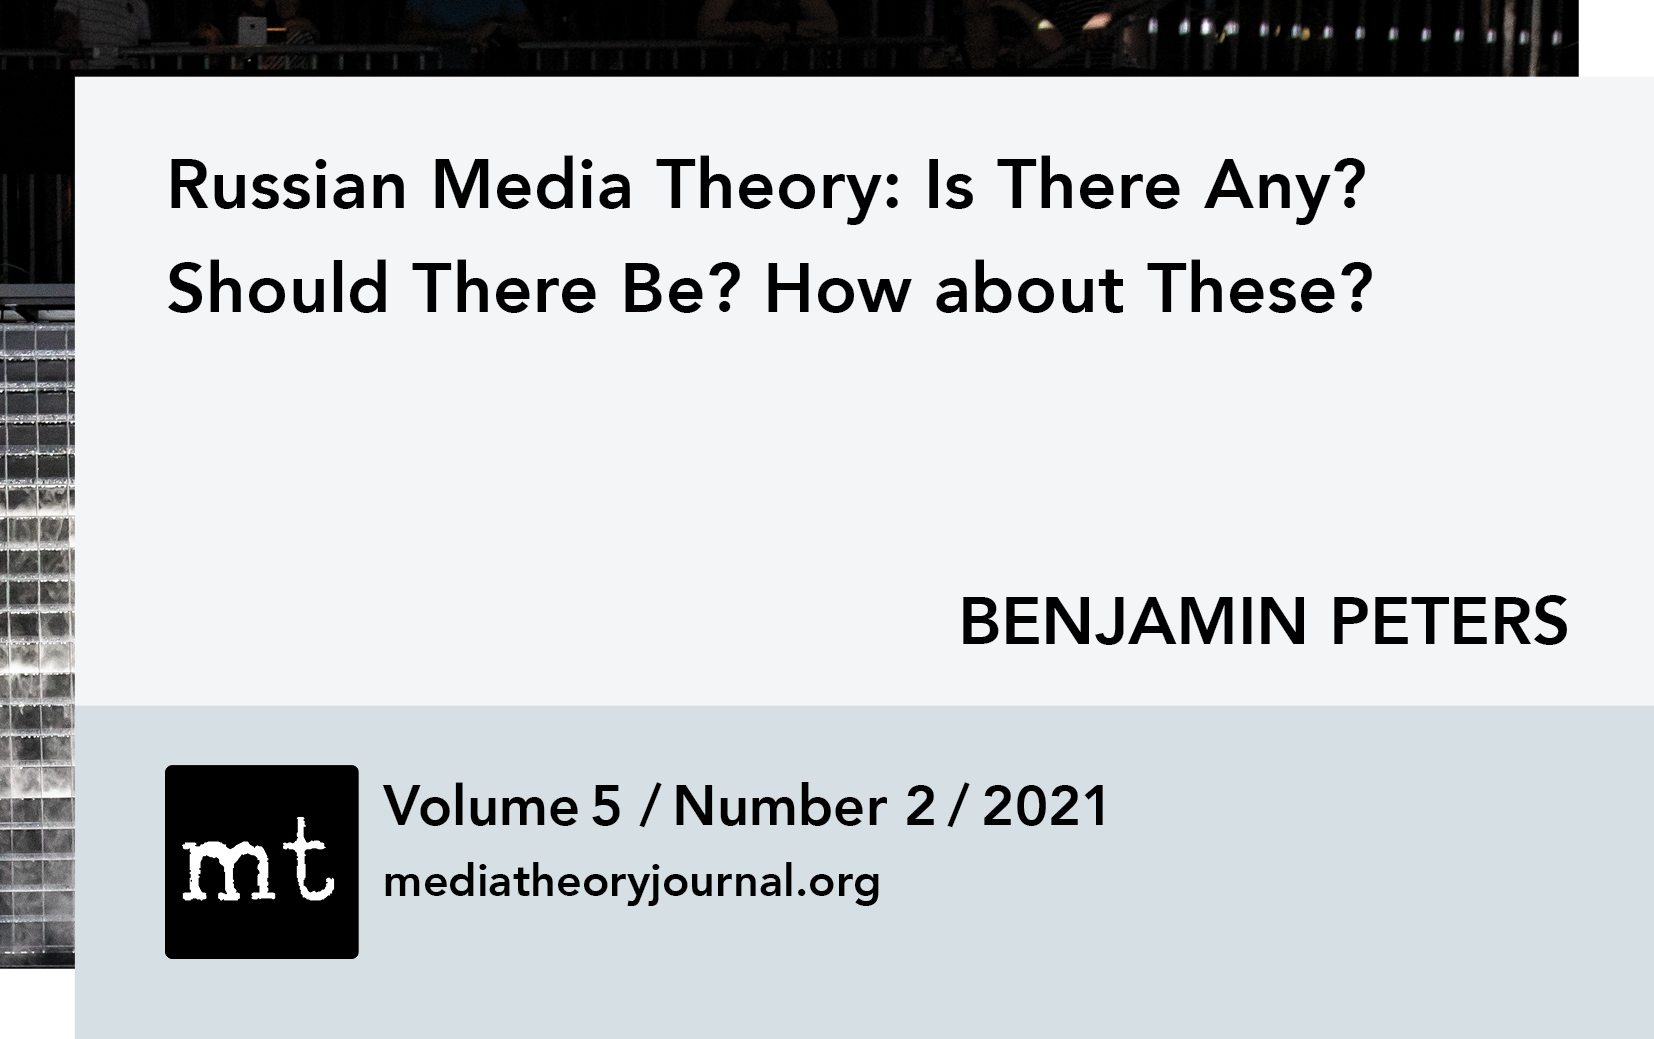 Benjamin Peters: Russian Media Theory